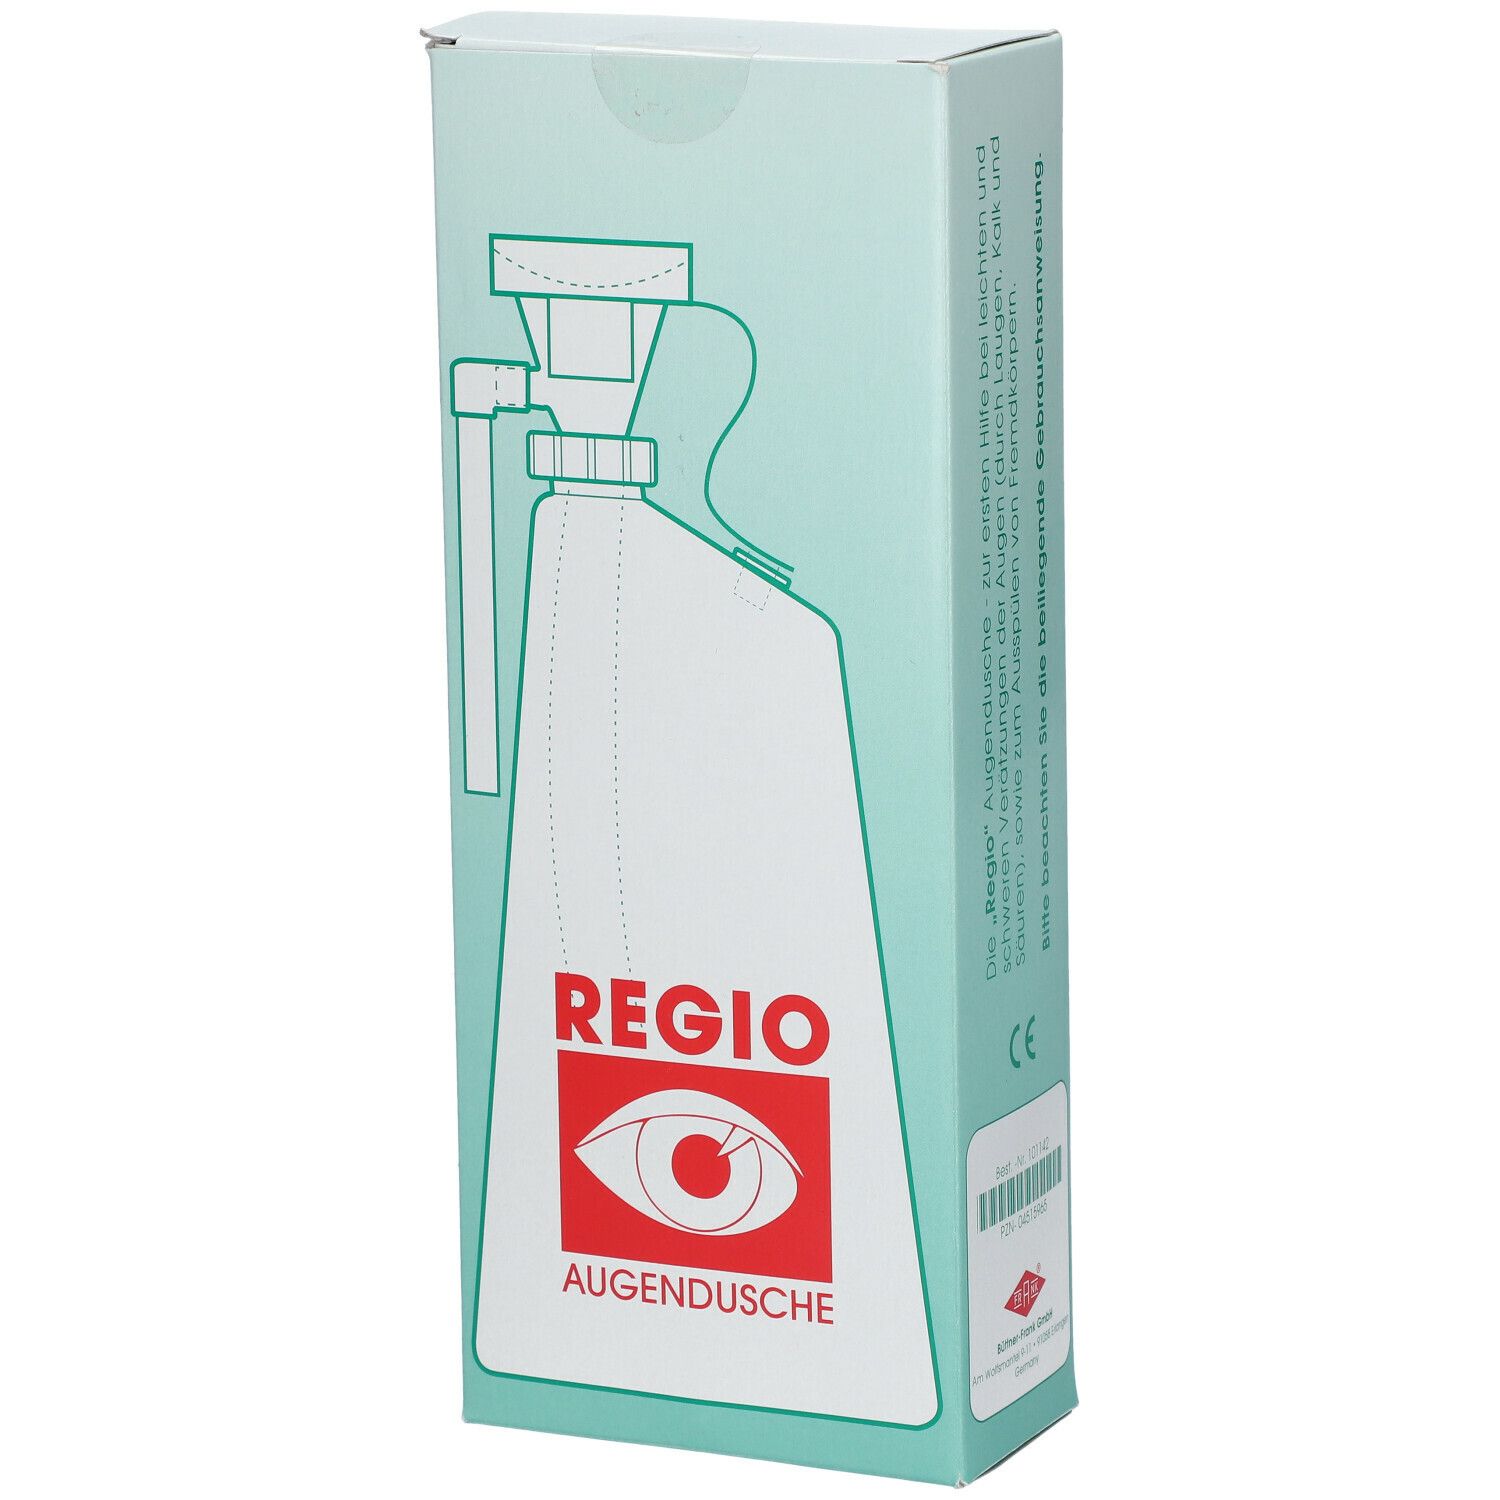 Eye flower bottle Regio® 750 ml